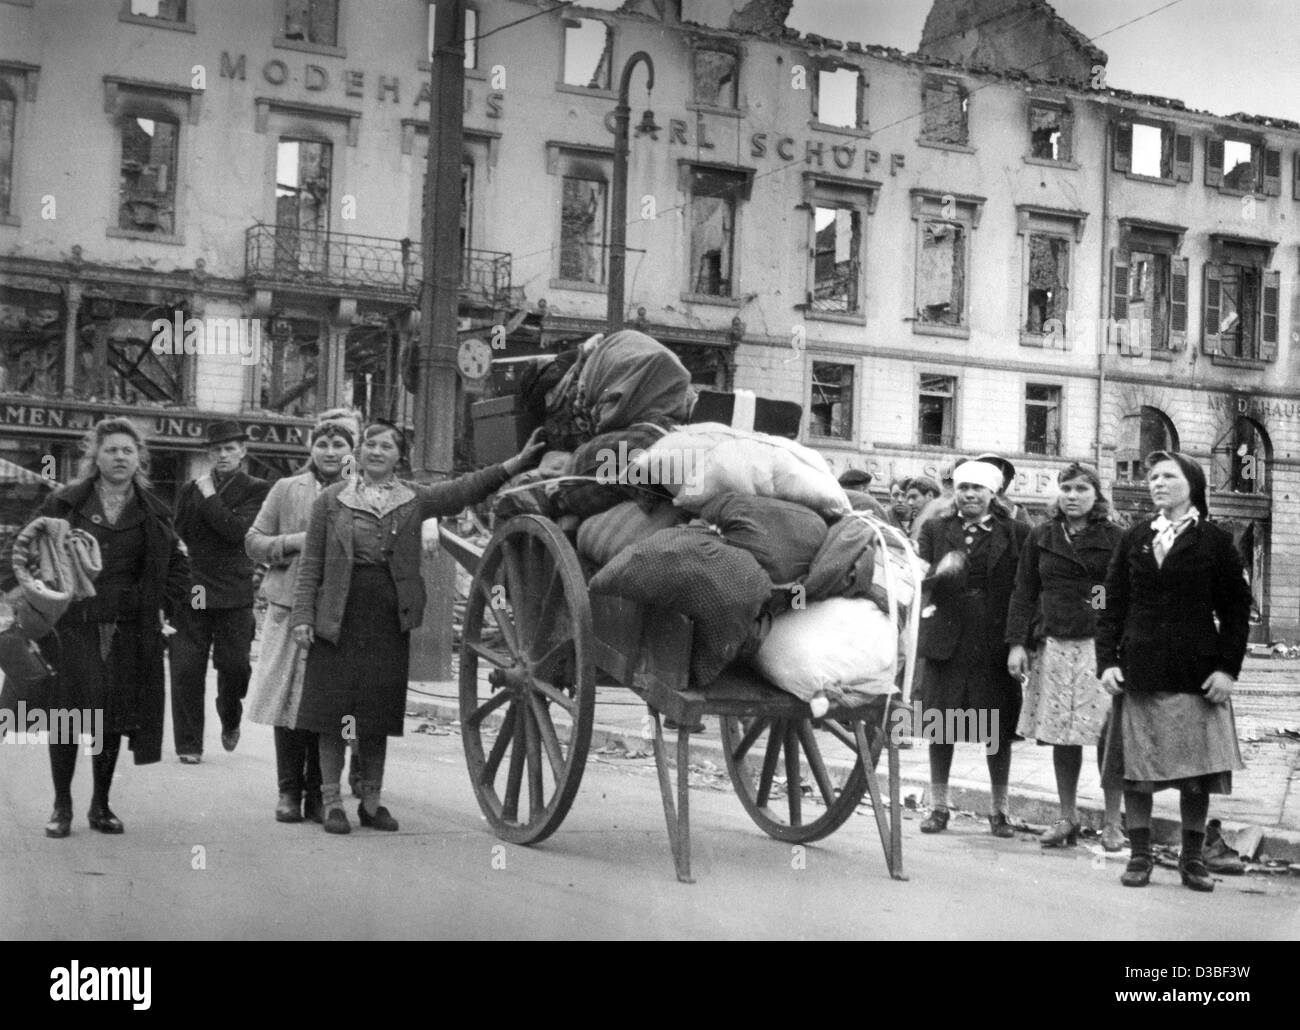 (Dpa-Dateien) - deutsche Flüchtlinge kommen mit einem Wagen in Karlsruhe, Deutschland, 1945. Auf dem Wagen hatten sie all ihre Habseligkeiten in Richtung Westen gezogen. Stockfoto